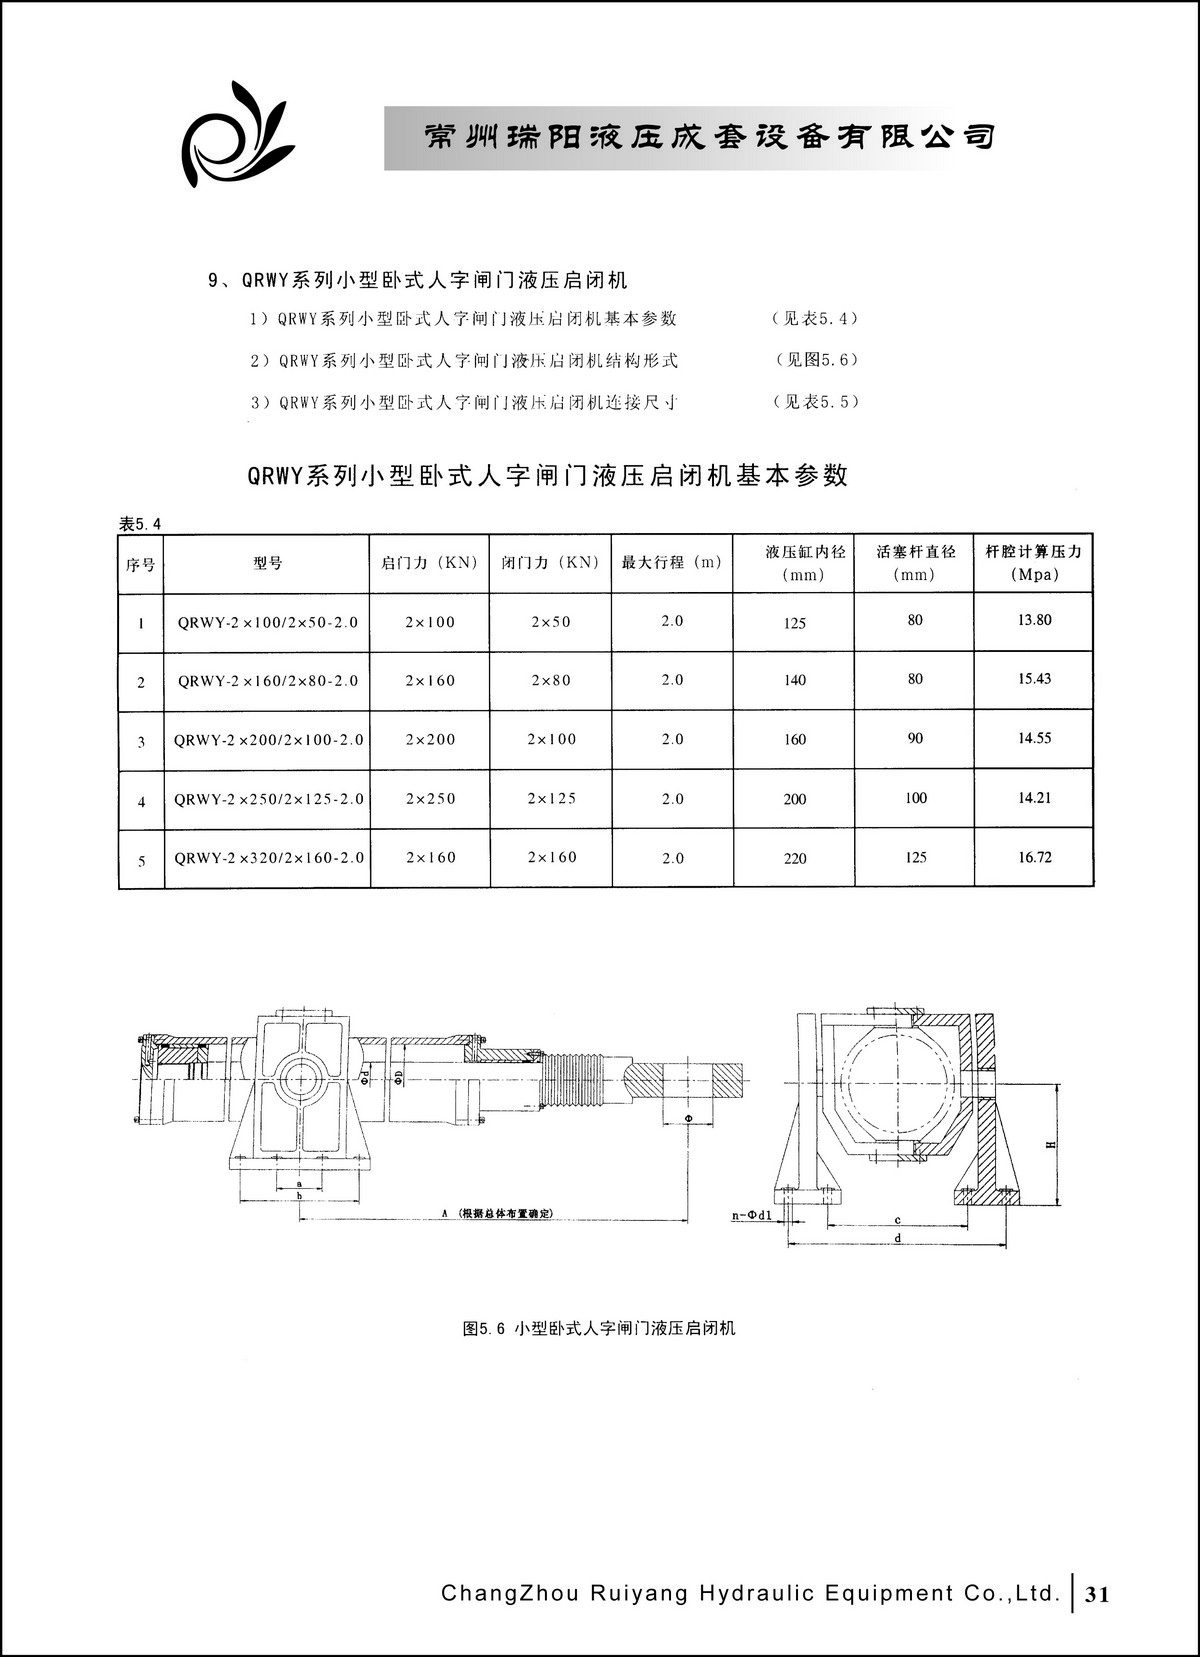 常州瑞阳液压成套设备有限公司产品样本2_页面_31.JPG